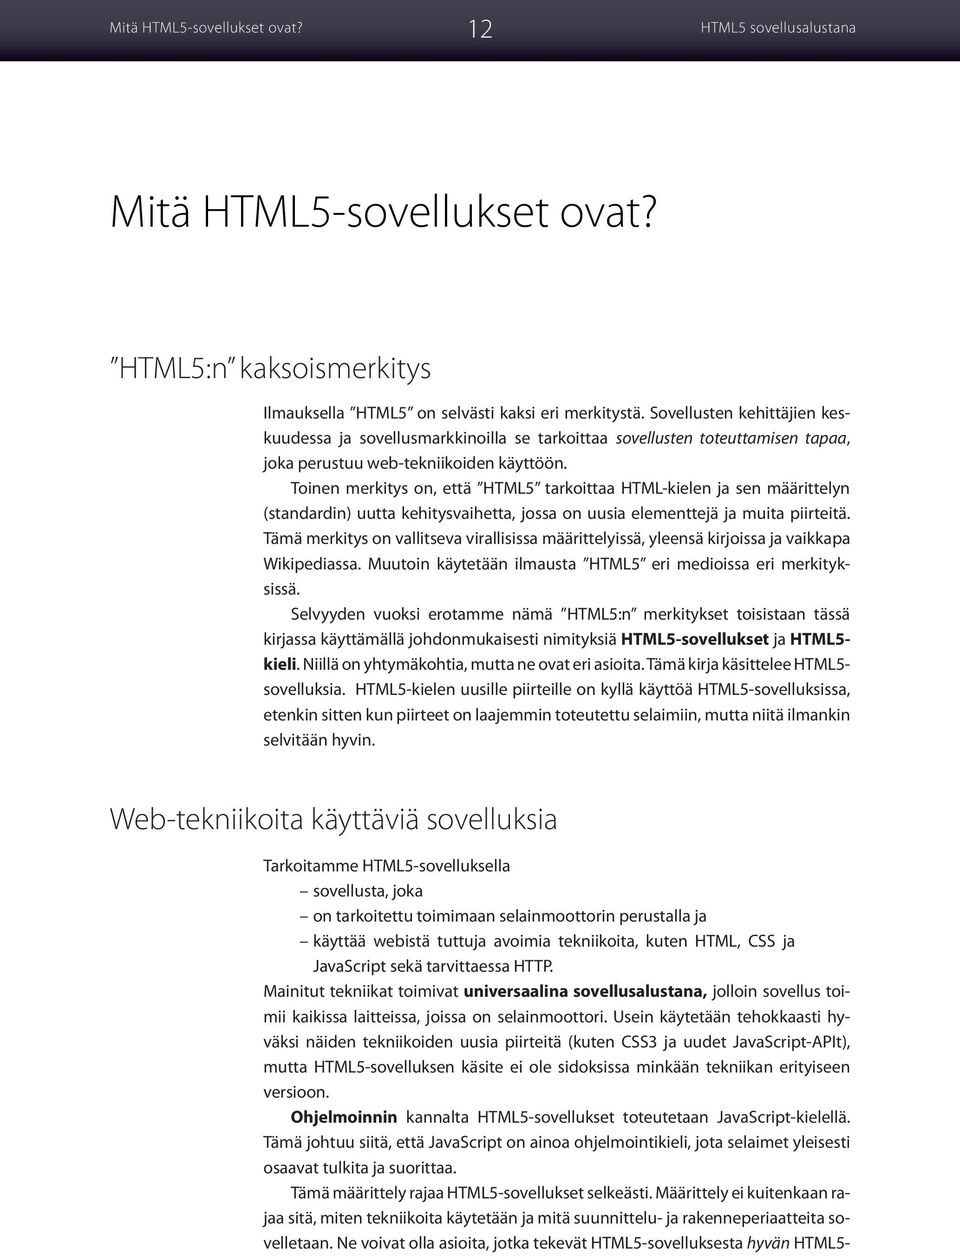 Toinen merkitys on, että HTML5 tarkoittaa HTML-kielen ja sen määrittelyn (standardin) uutta kehitysvaihetta, jossa on uusia elementtejä ja muita piirteitä.